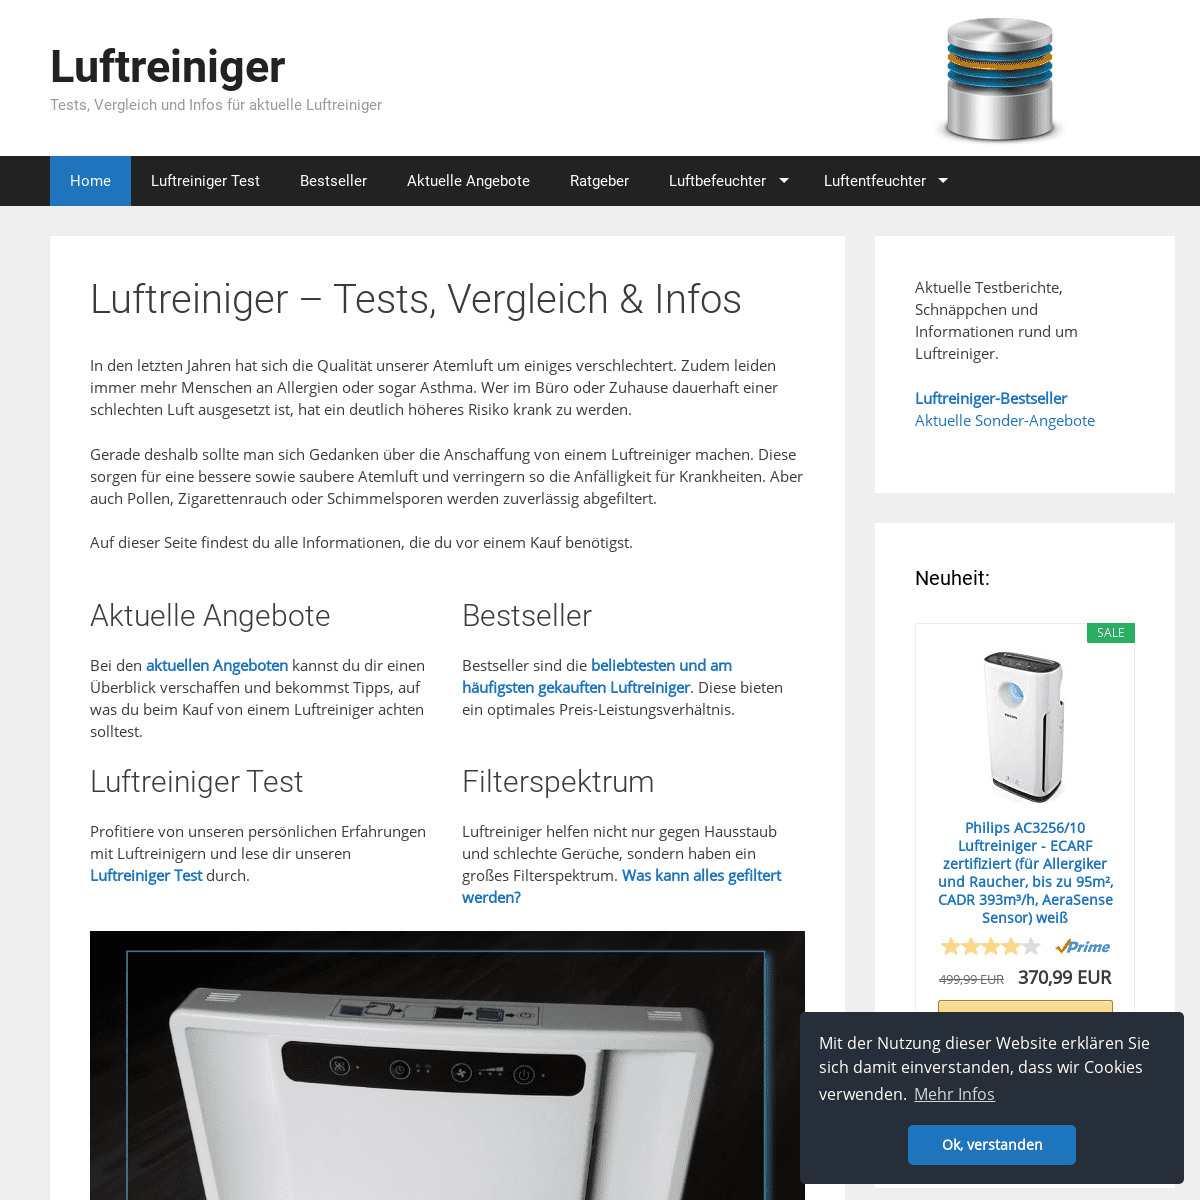 A complete backup of luftreiniger-vergleich.de